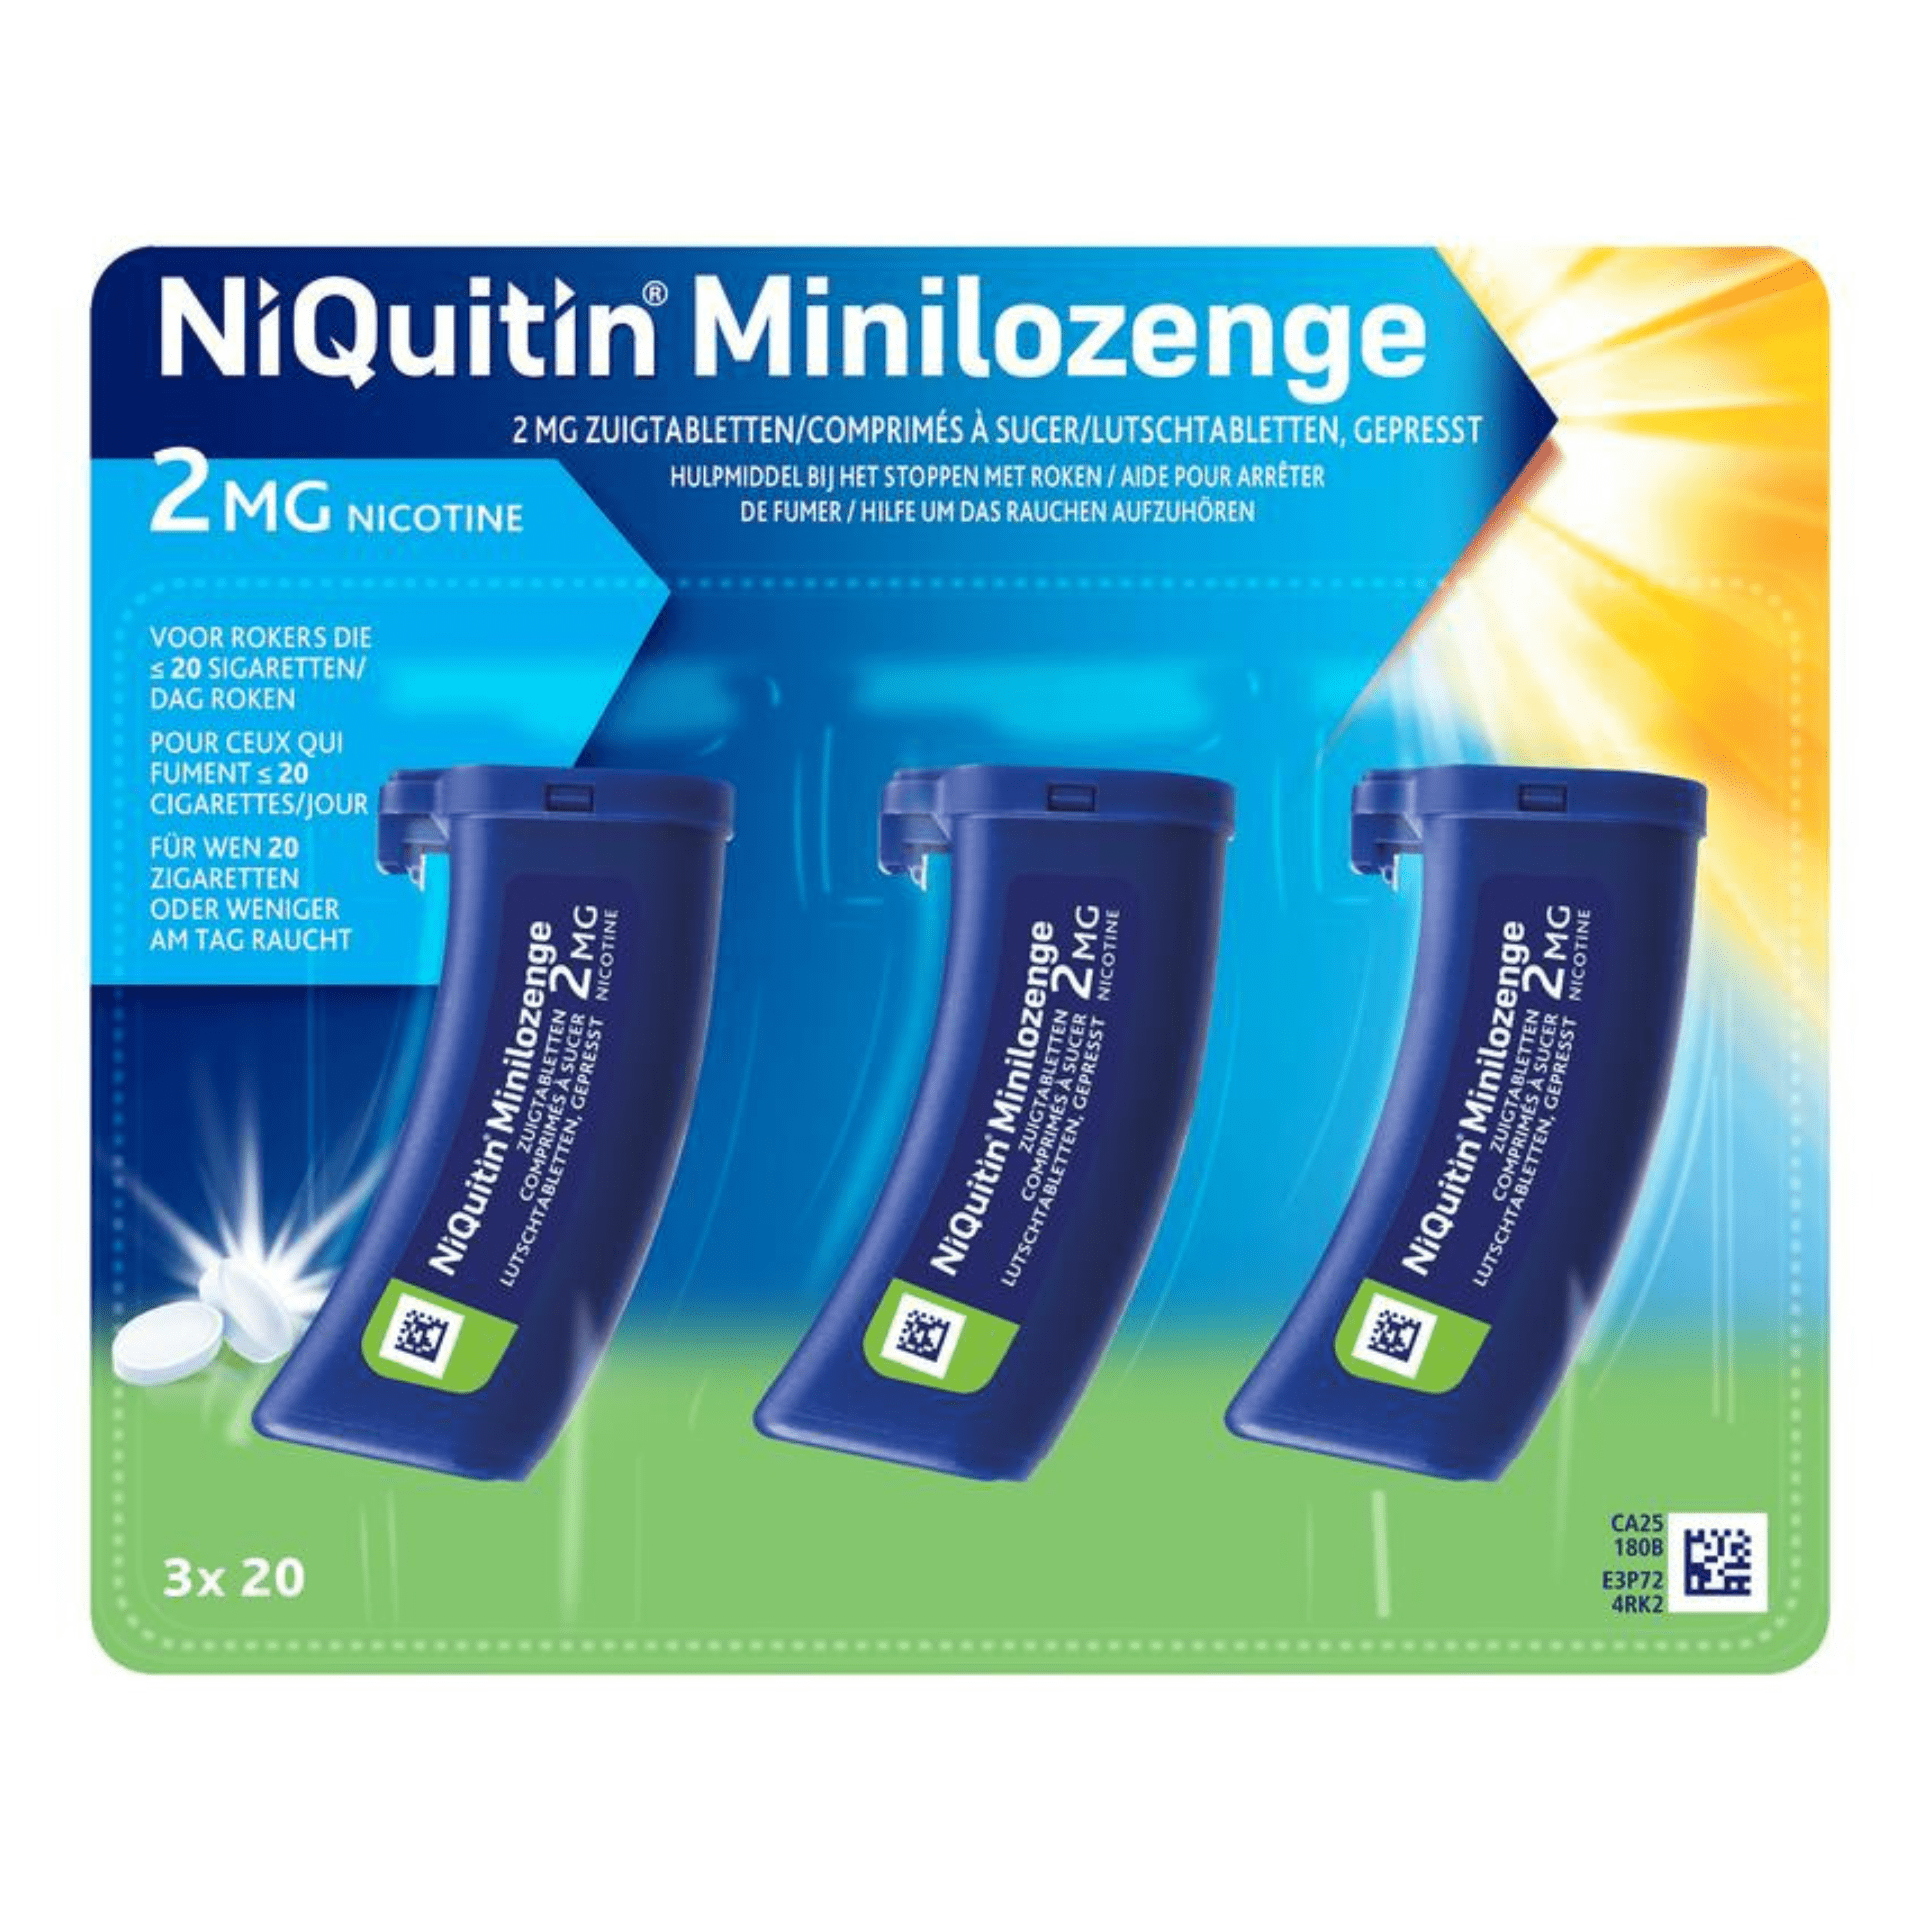 NiQuitin Minilozenge 2 mg